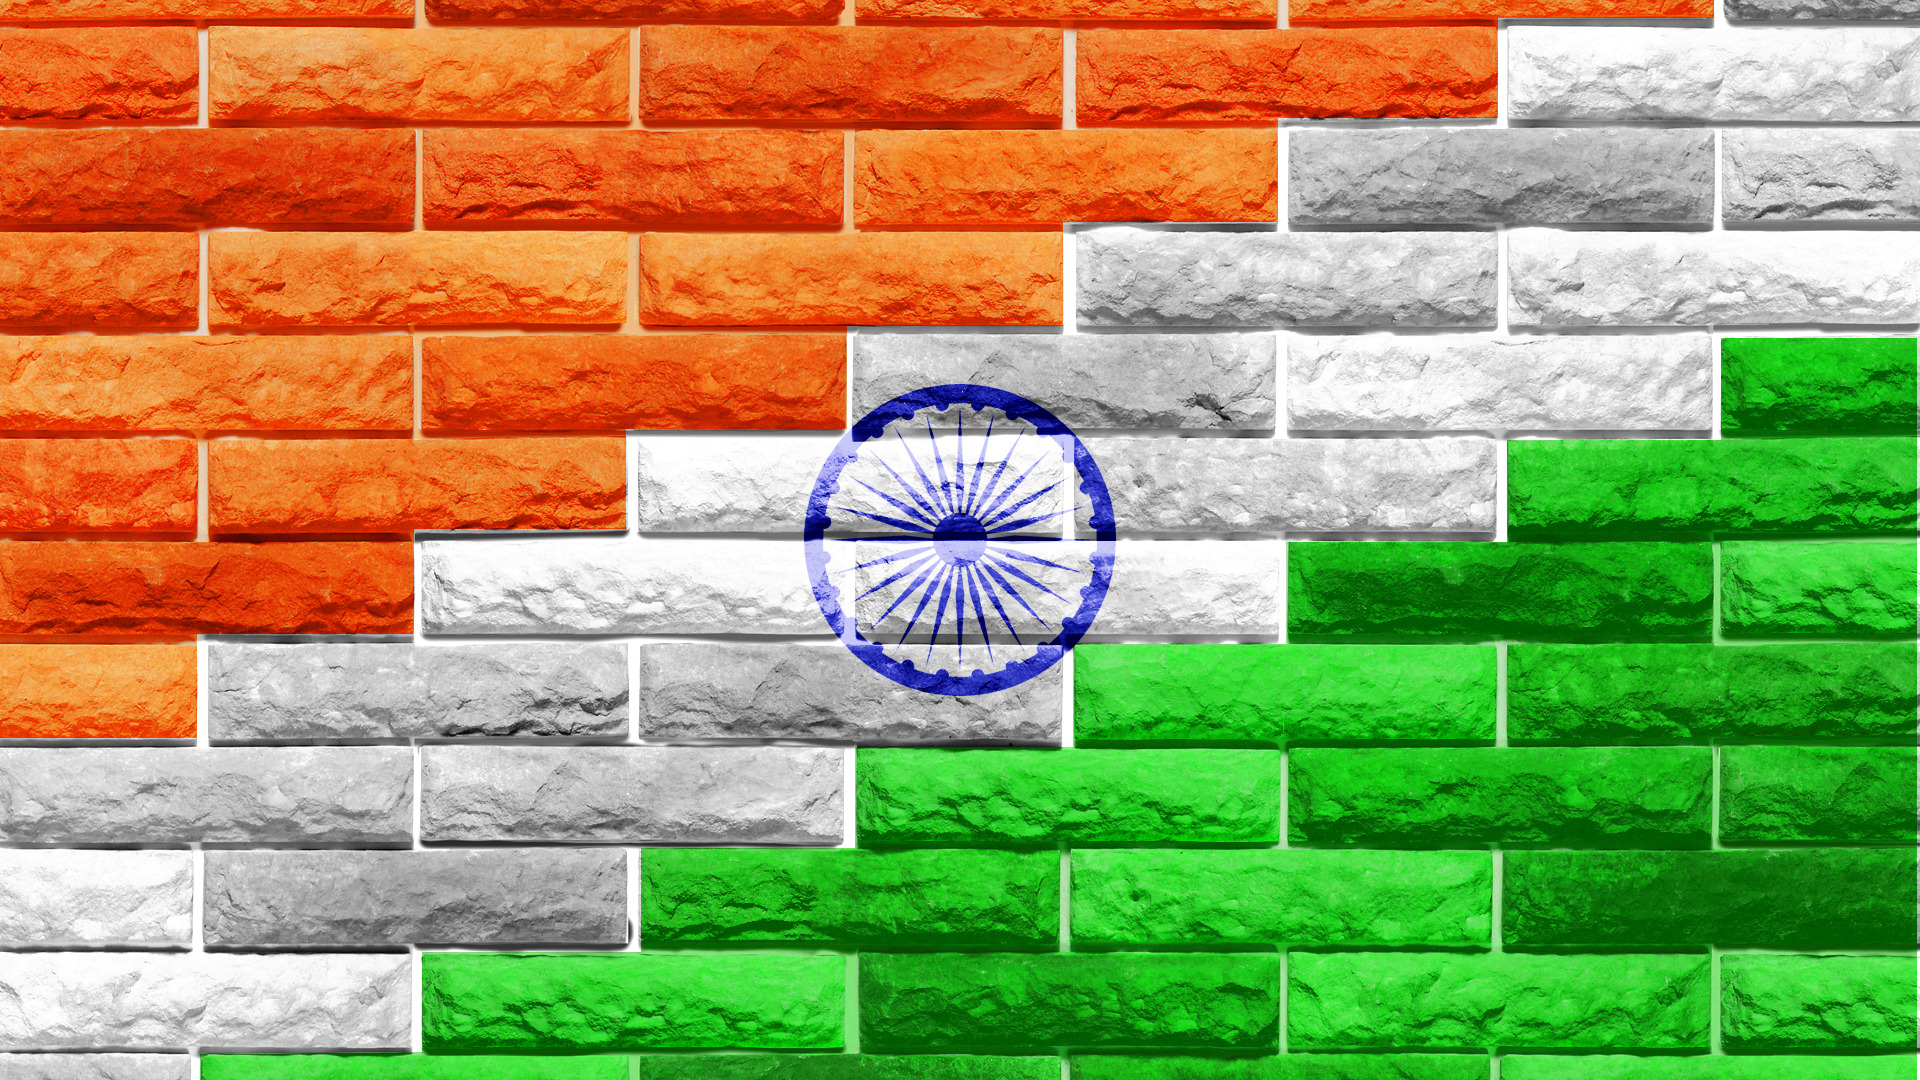 49+] India Flag Wallpaper 2015 - WallpaperSafari